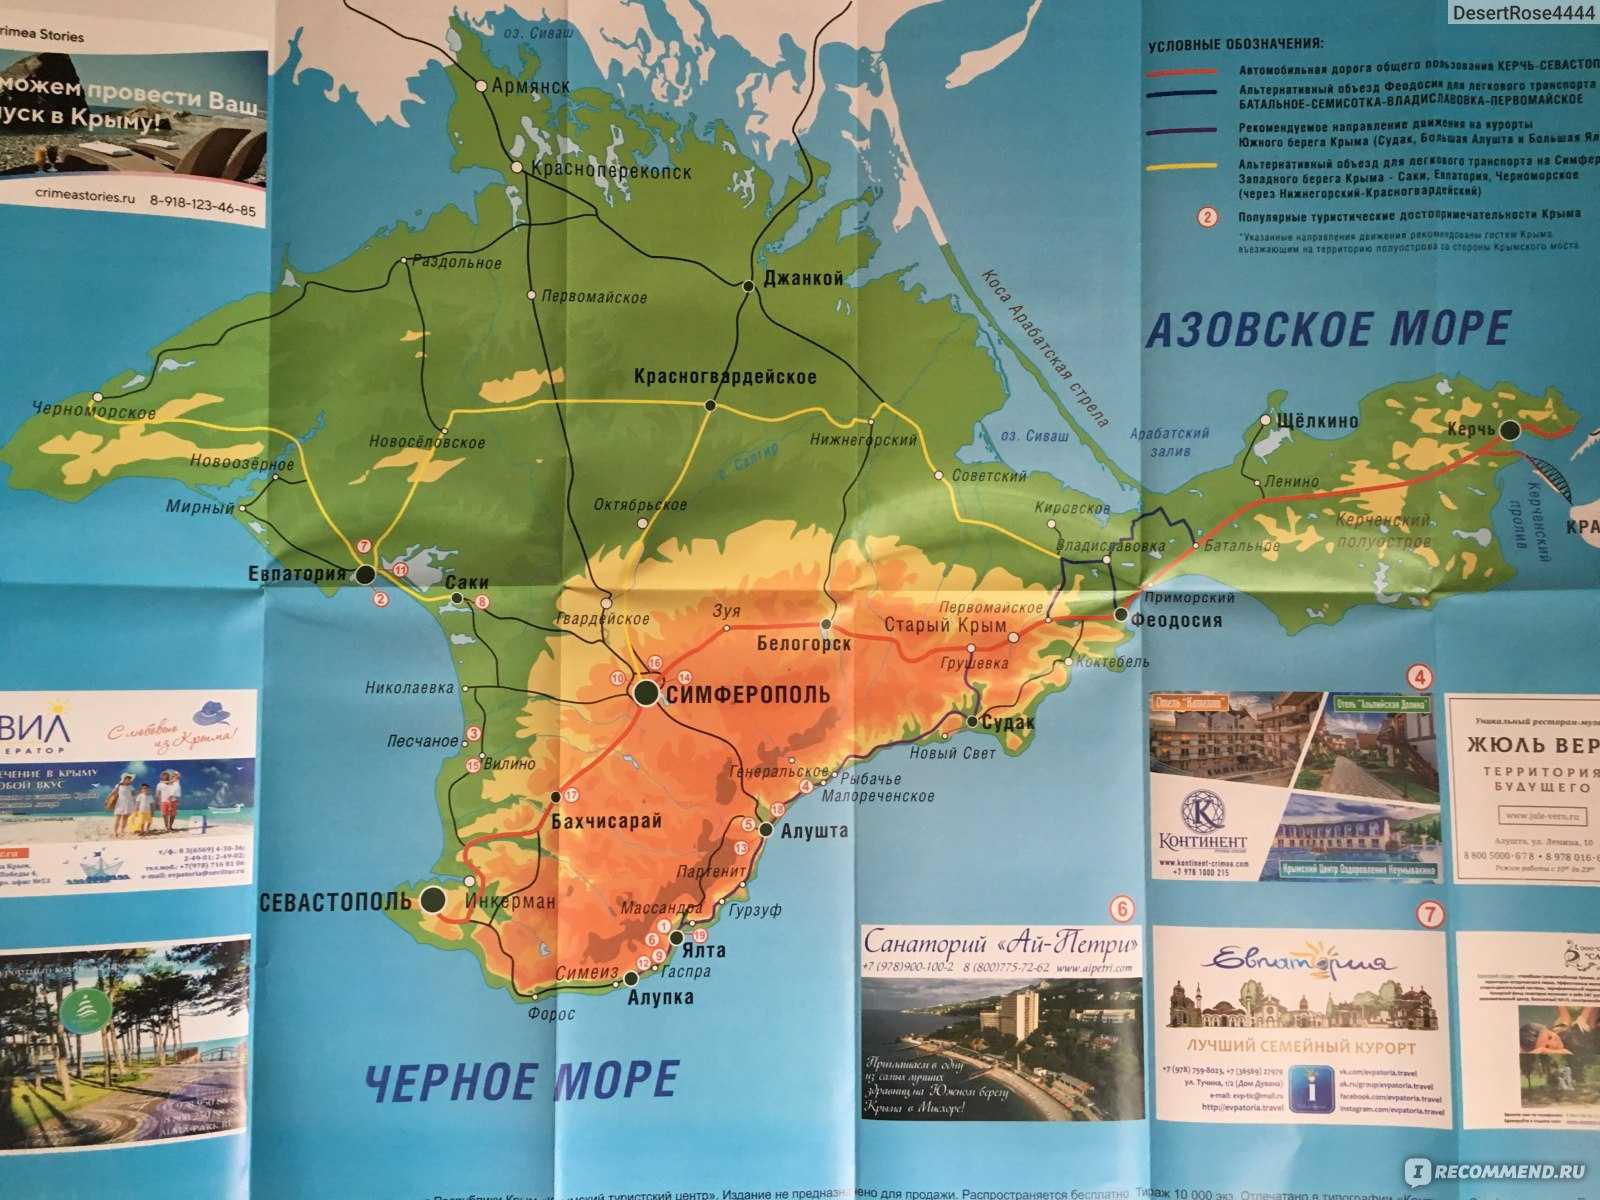 Рейтинг самых известных и интересных мест Крыма с фото и описаниями Адреса достопримечательностей Что посмотреть на полуострове Крым, куда съездить в 2022 году